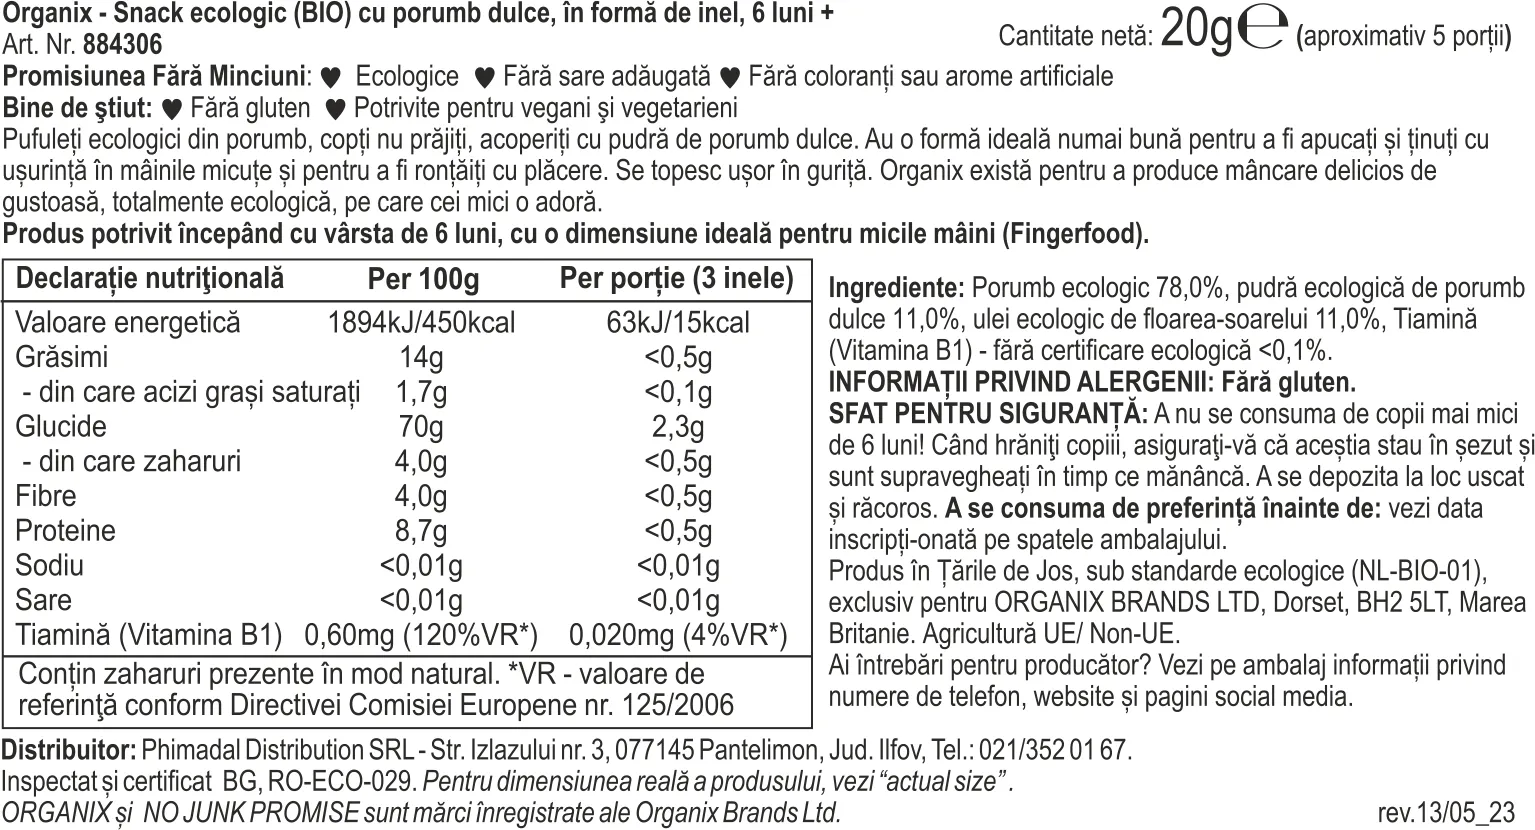 Snack cu porumb dulce in forma de inel +6 luni Bio, 20g, Organix 